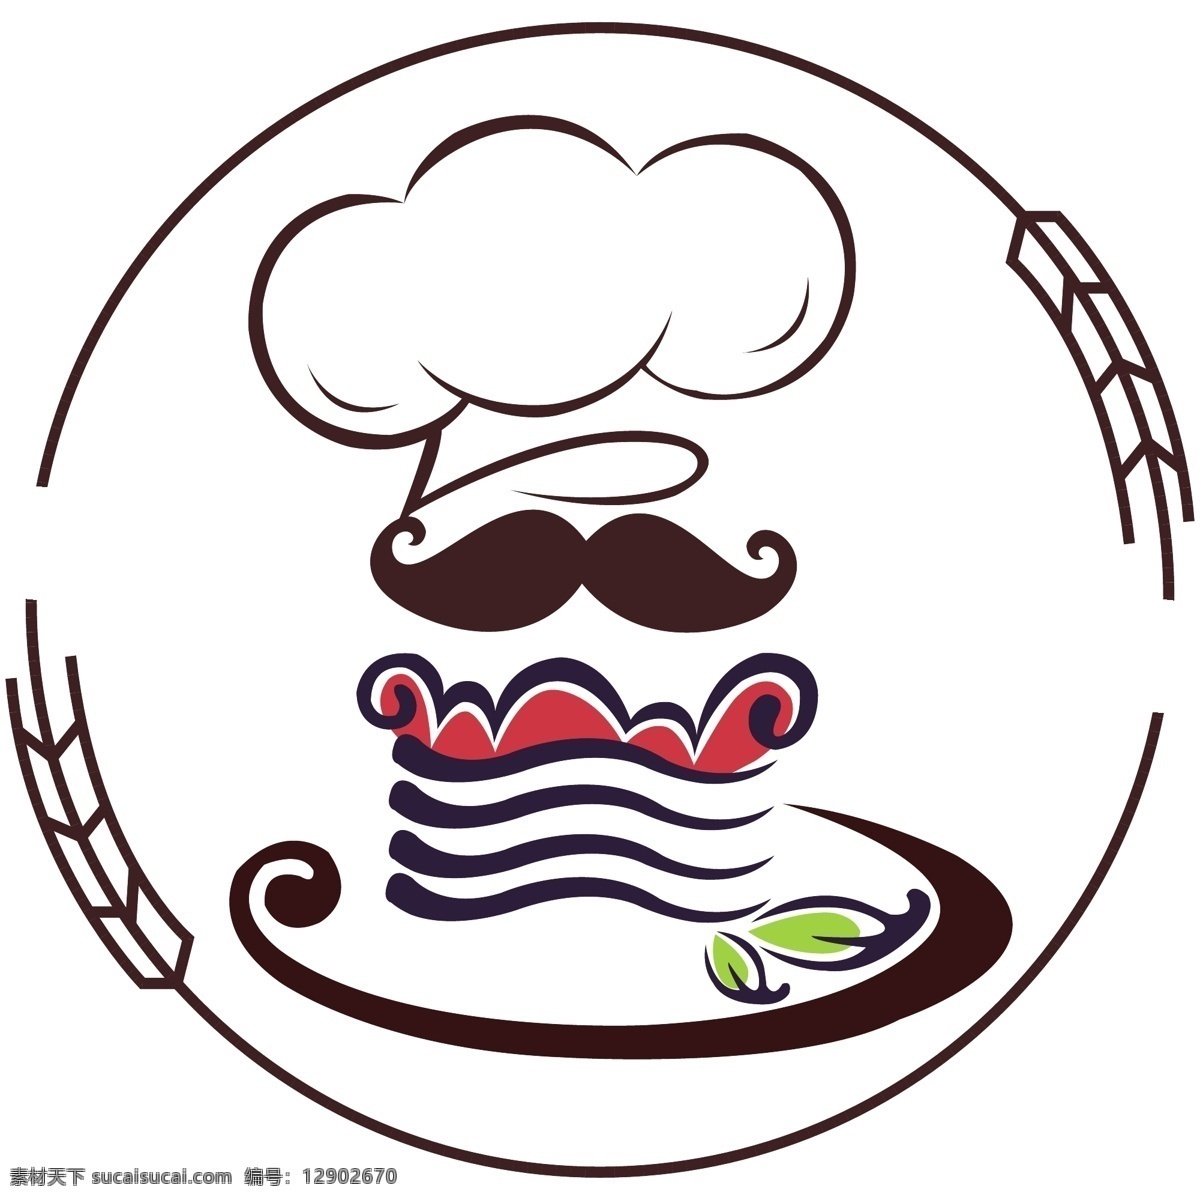 厨师logo 烘焙 厨师 logo 蛋糕 小麦 ai素材